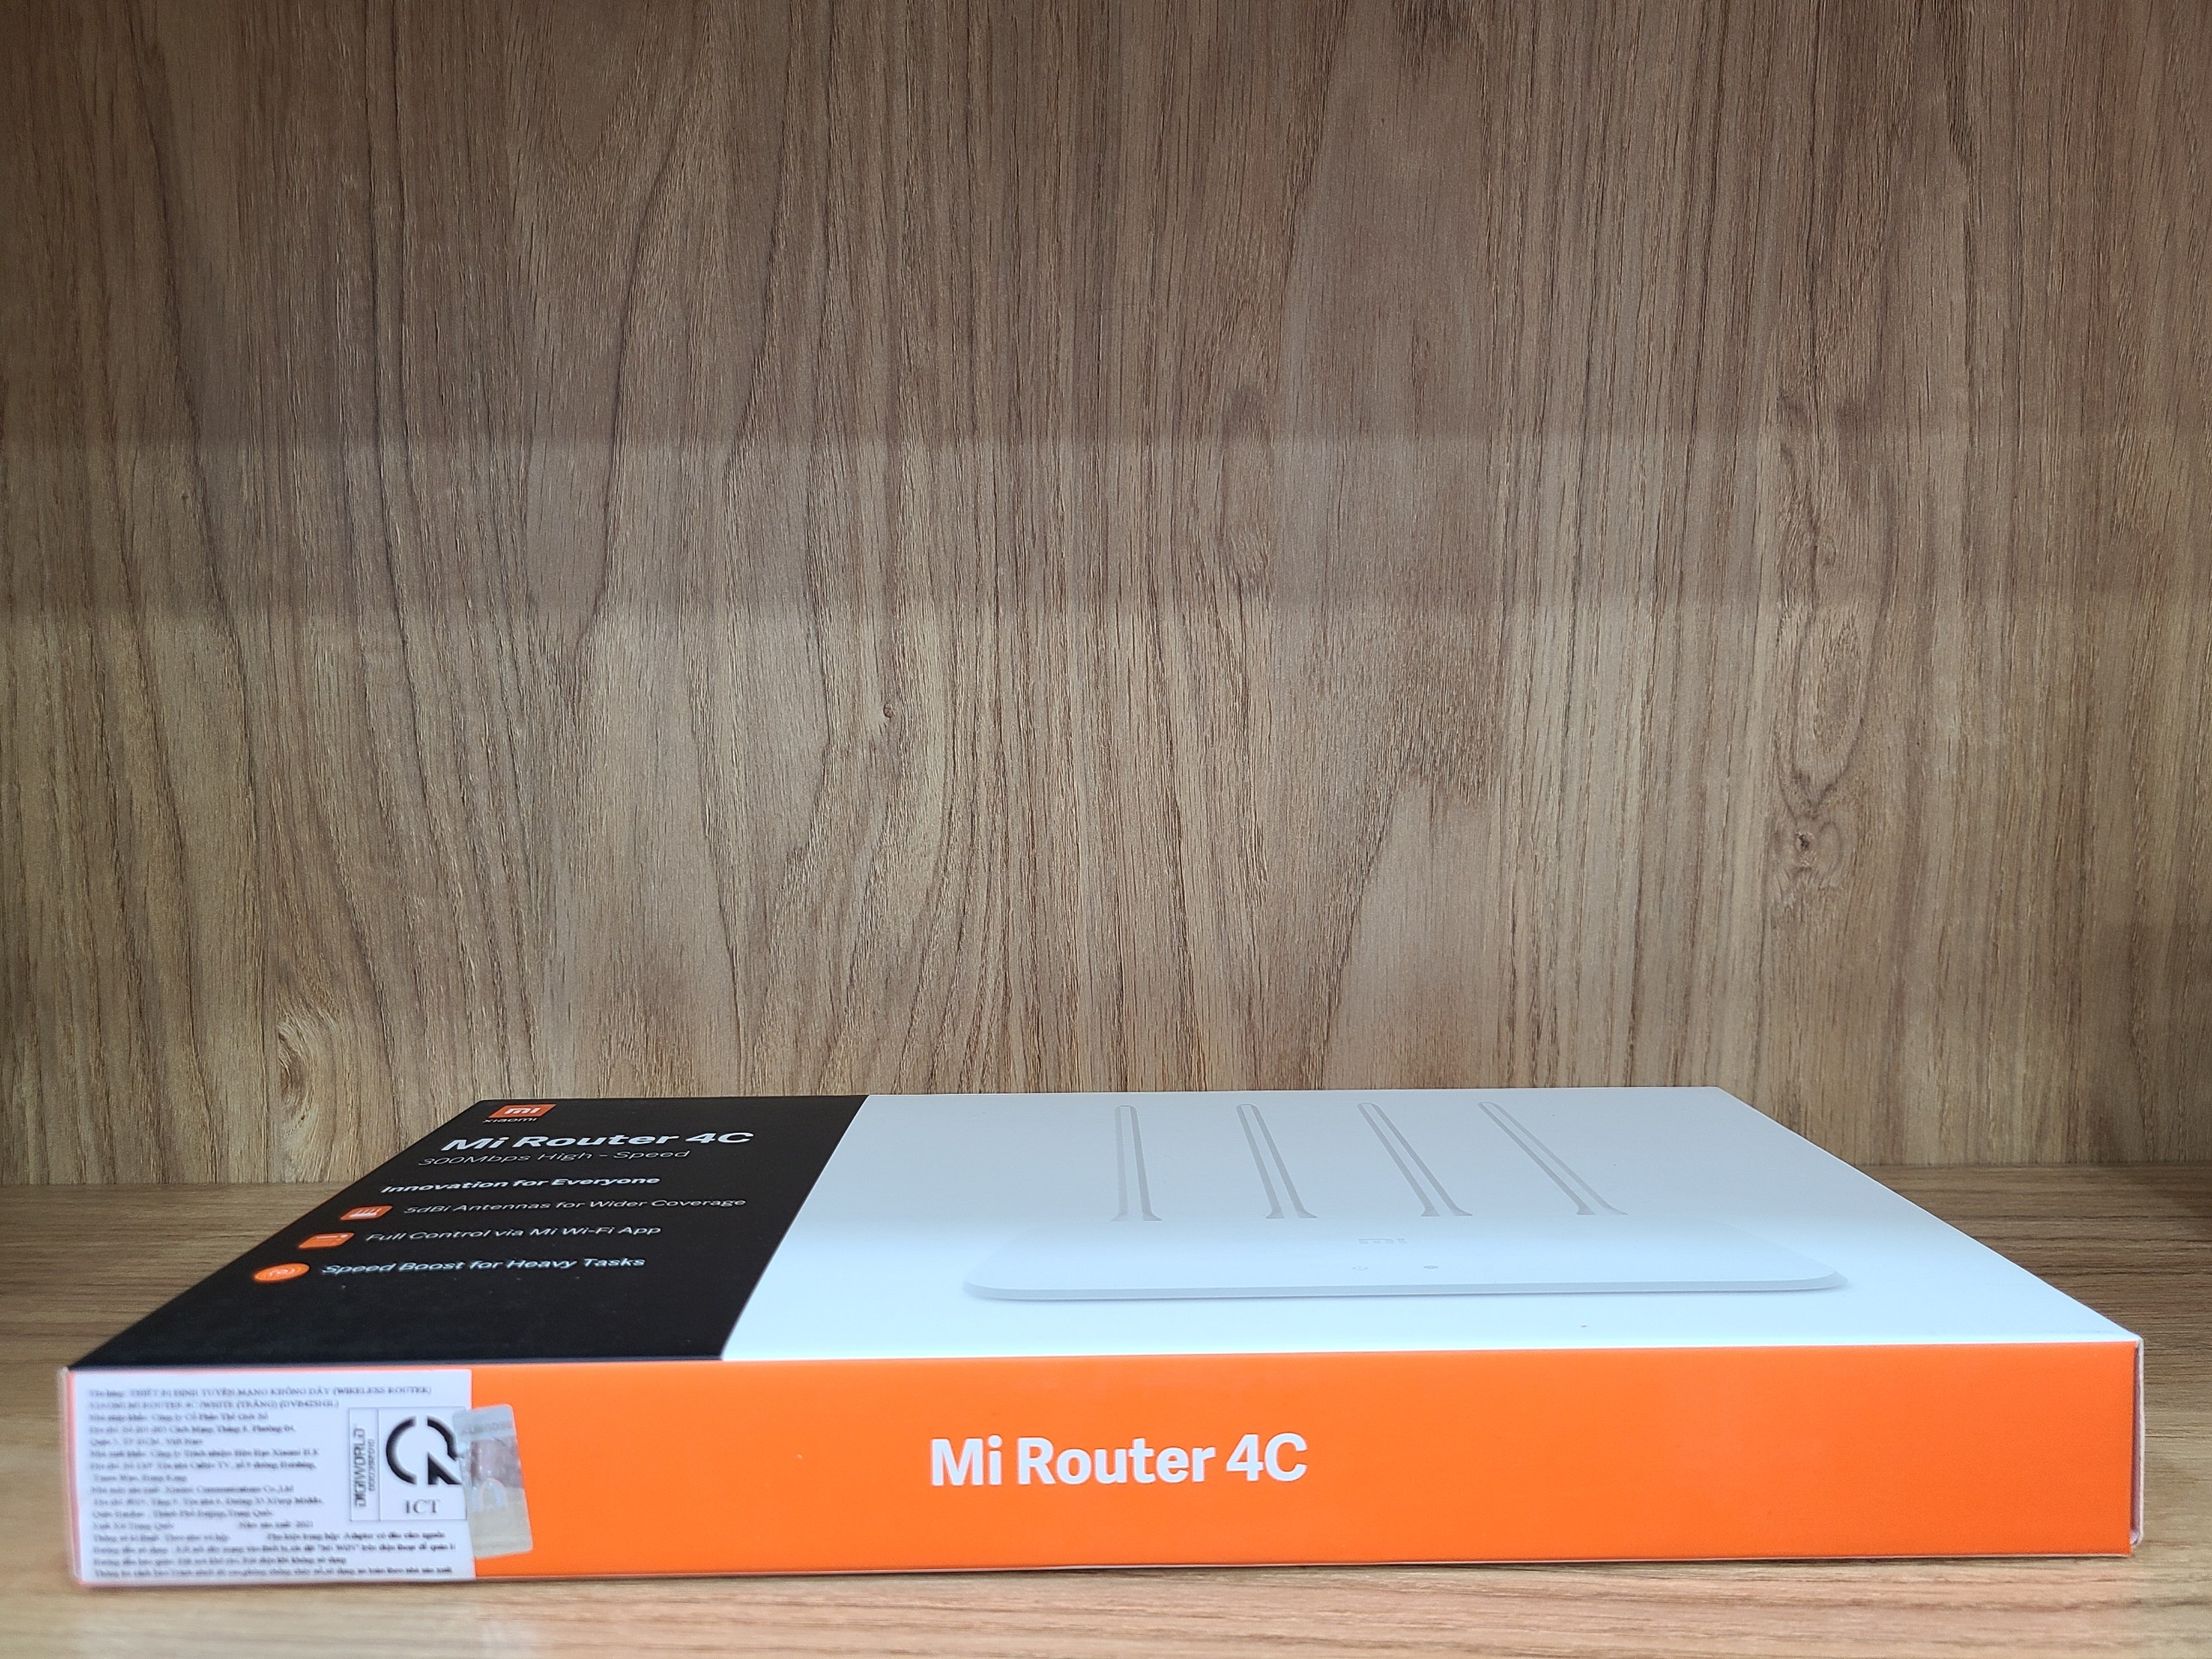 Hình ảnh Bộ phát Wifi Xiaomi Mi Router 4C - Hàng Chính Hãng Digiworld